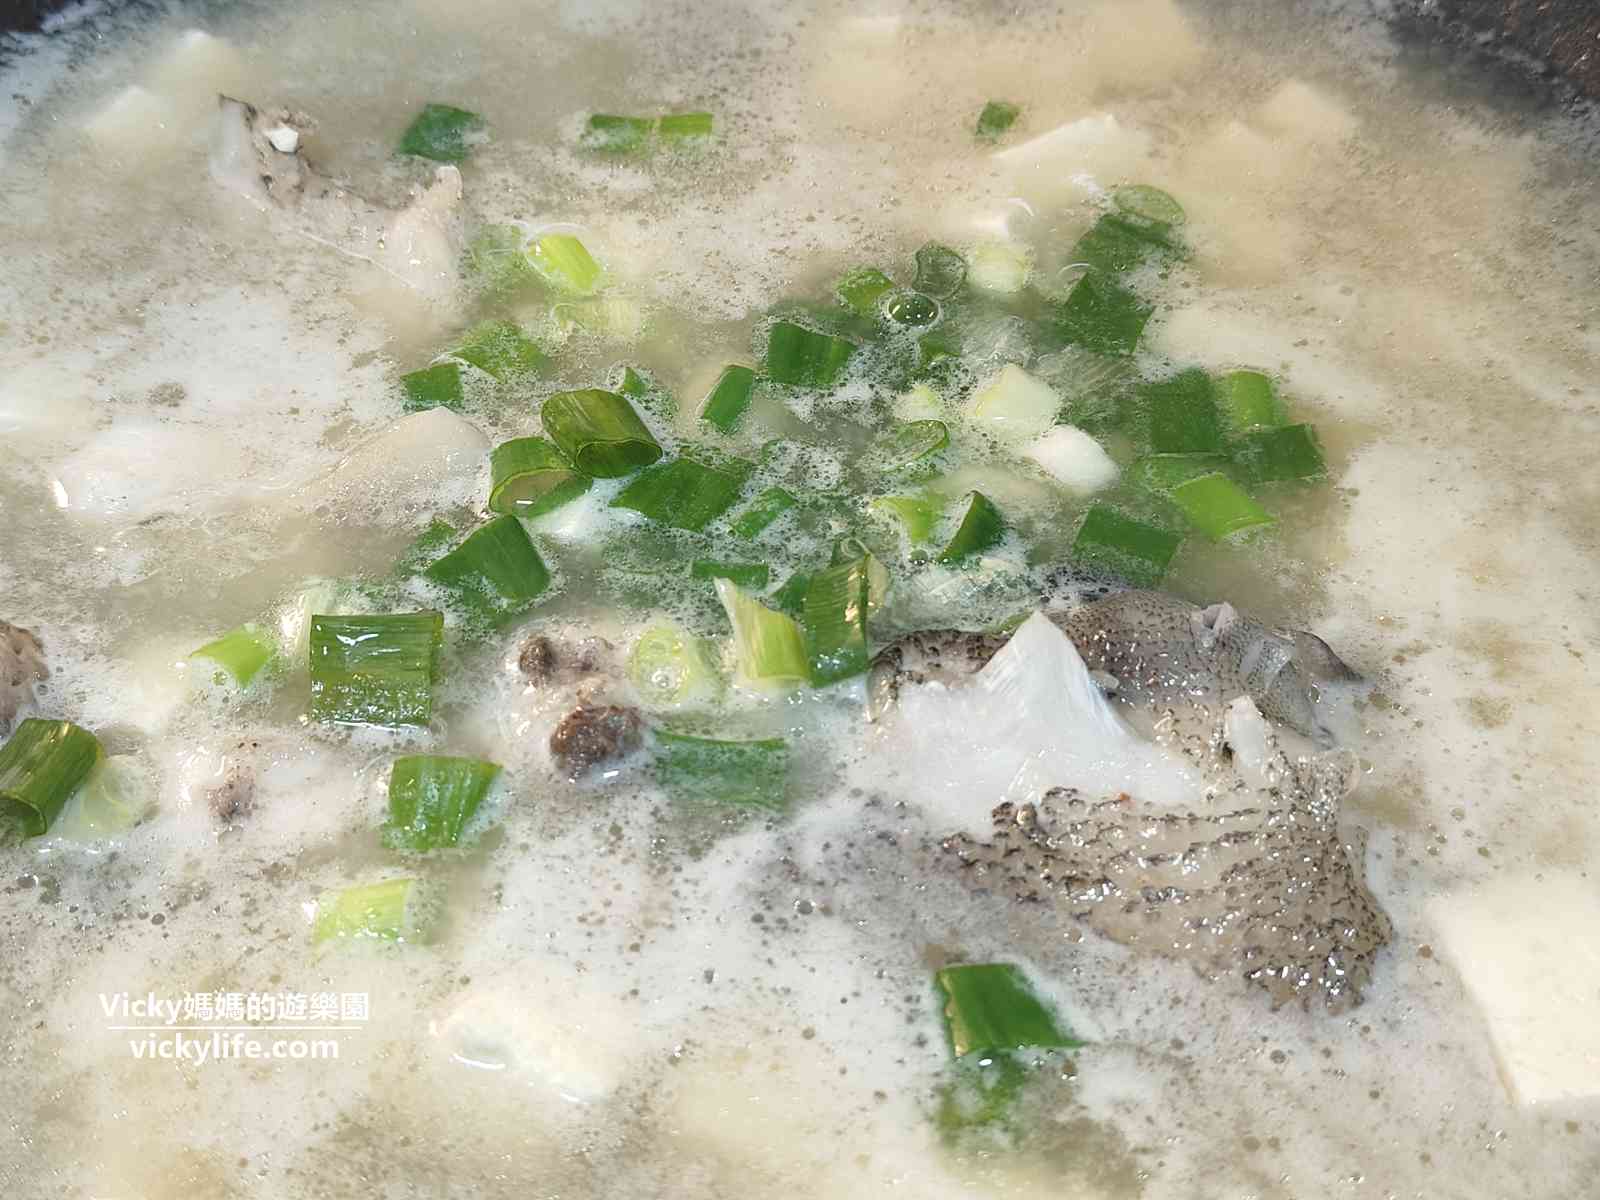 簡易食譜︱龍膽石斑魚頭豆腐味噌湯：超簡單的魚湯煮法，在家就可以喝溫暖的鮮魚湯